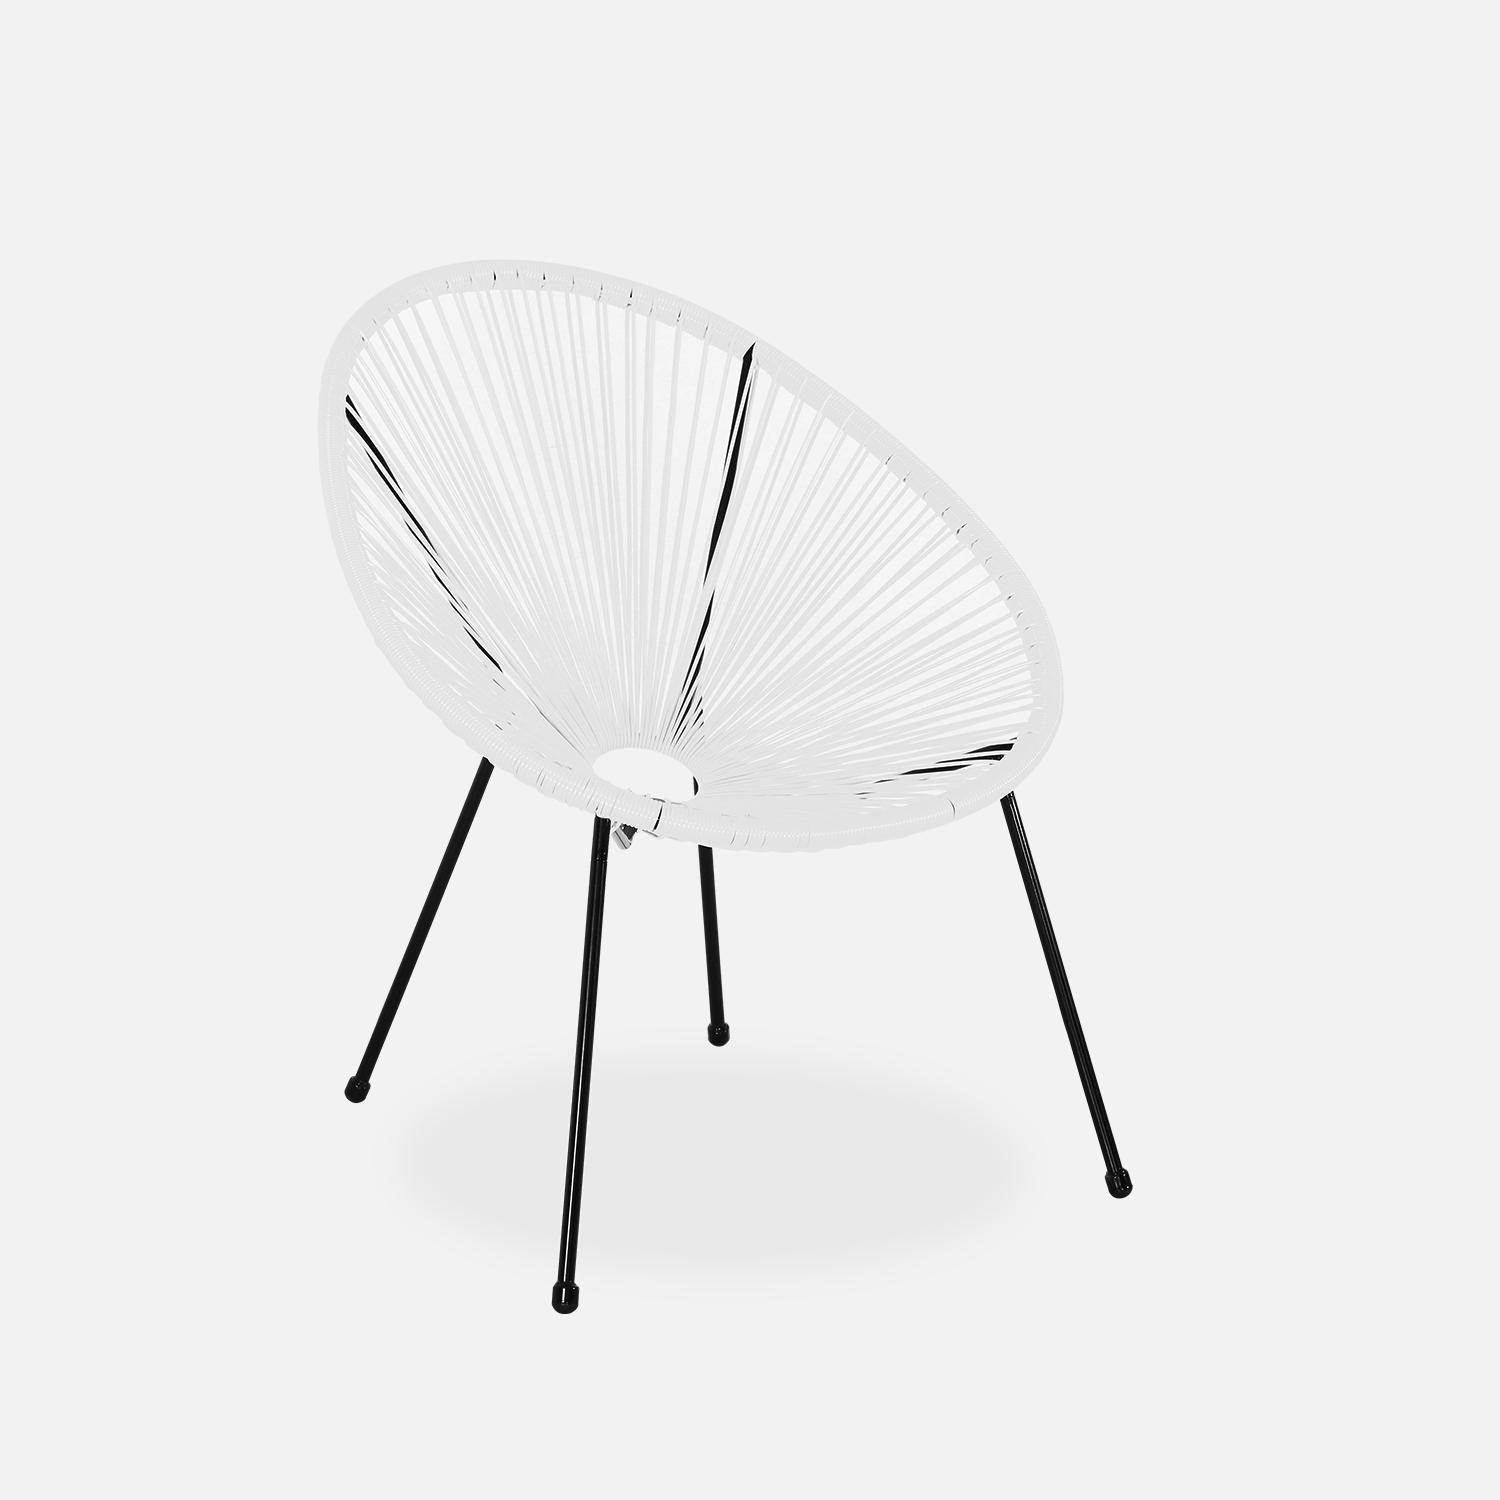 ACAPULCO stoel ei-vormig - Wit- Stoel 4 poten retro design, plastic koorden, binnen/buiten Photo2